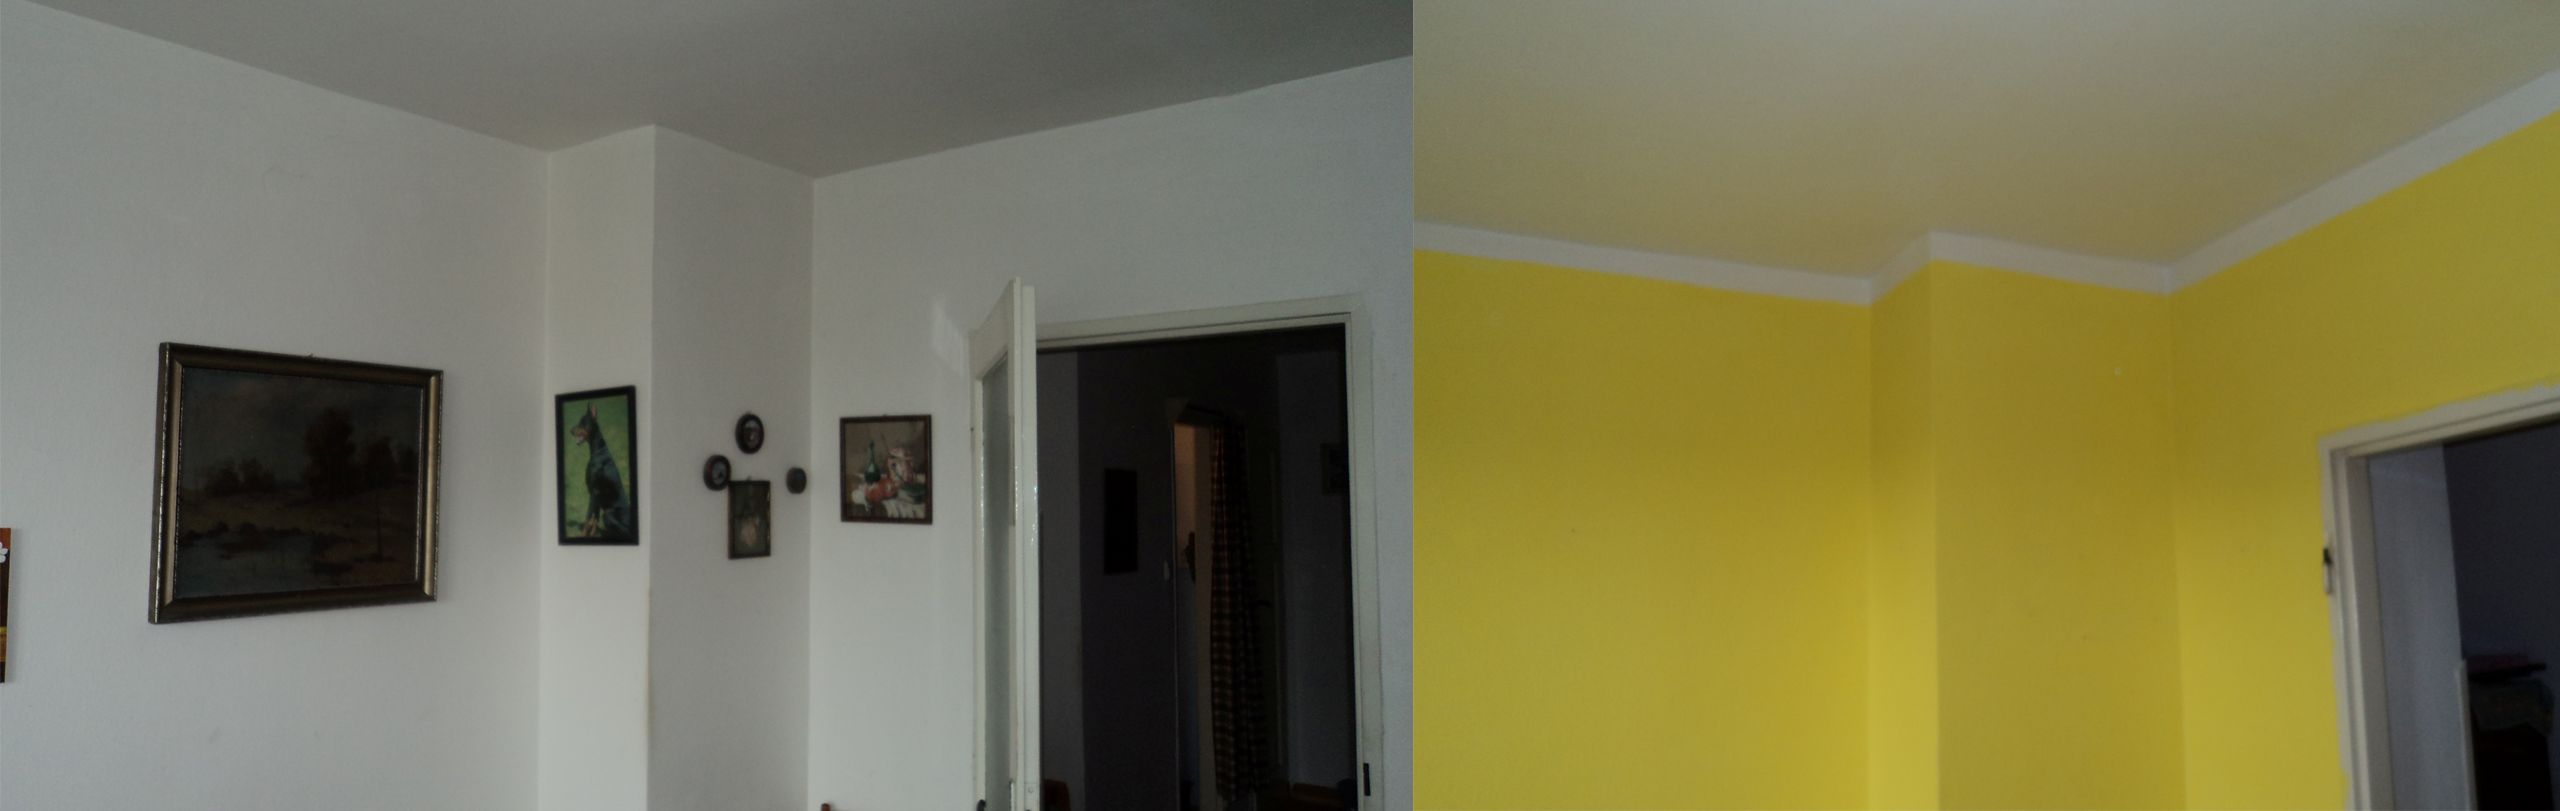 malování pokoje světlou citrusovou barvou